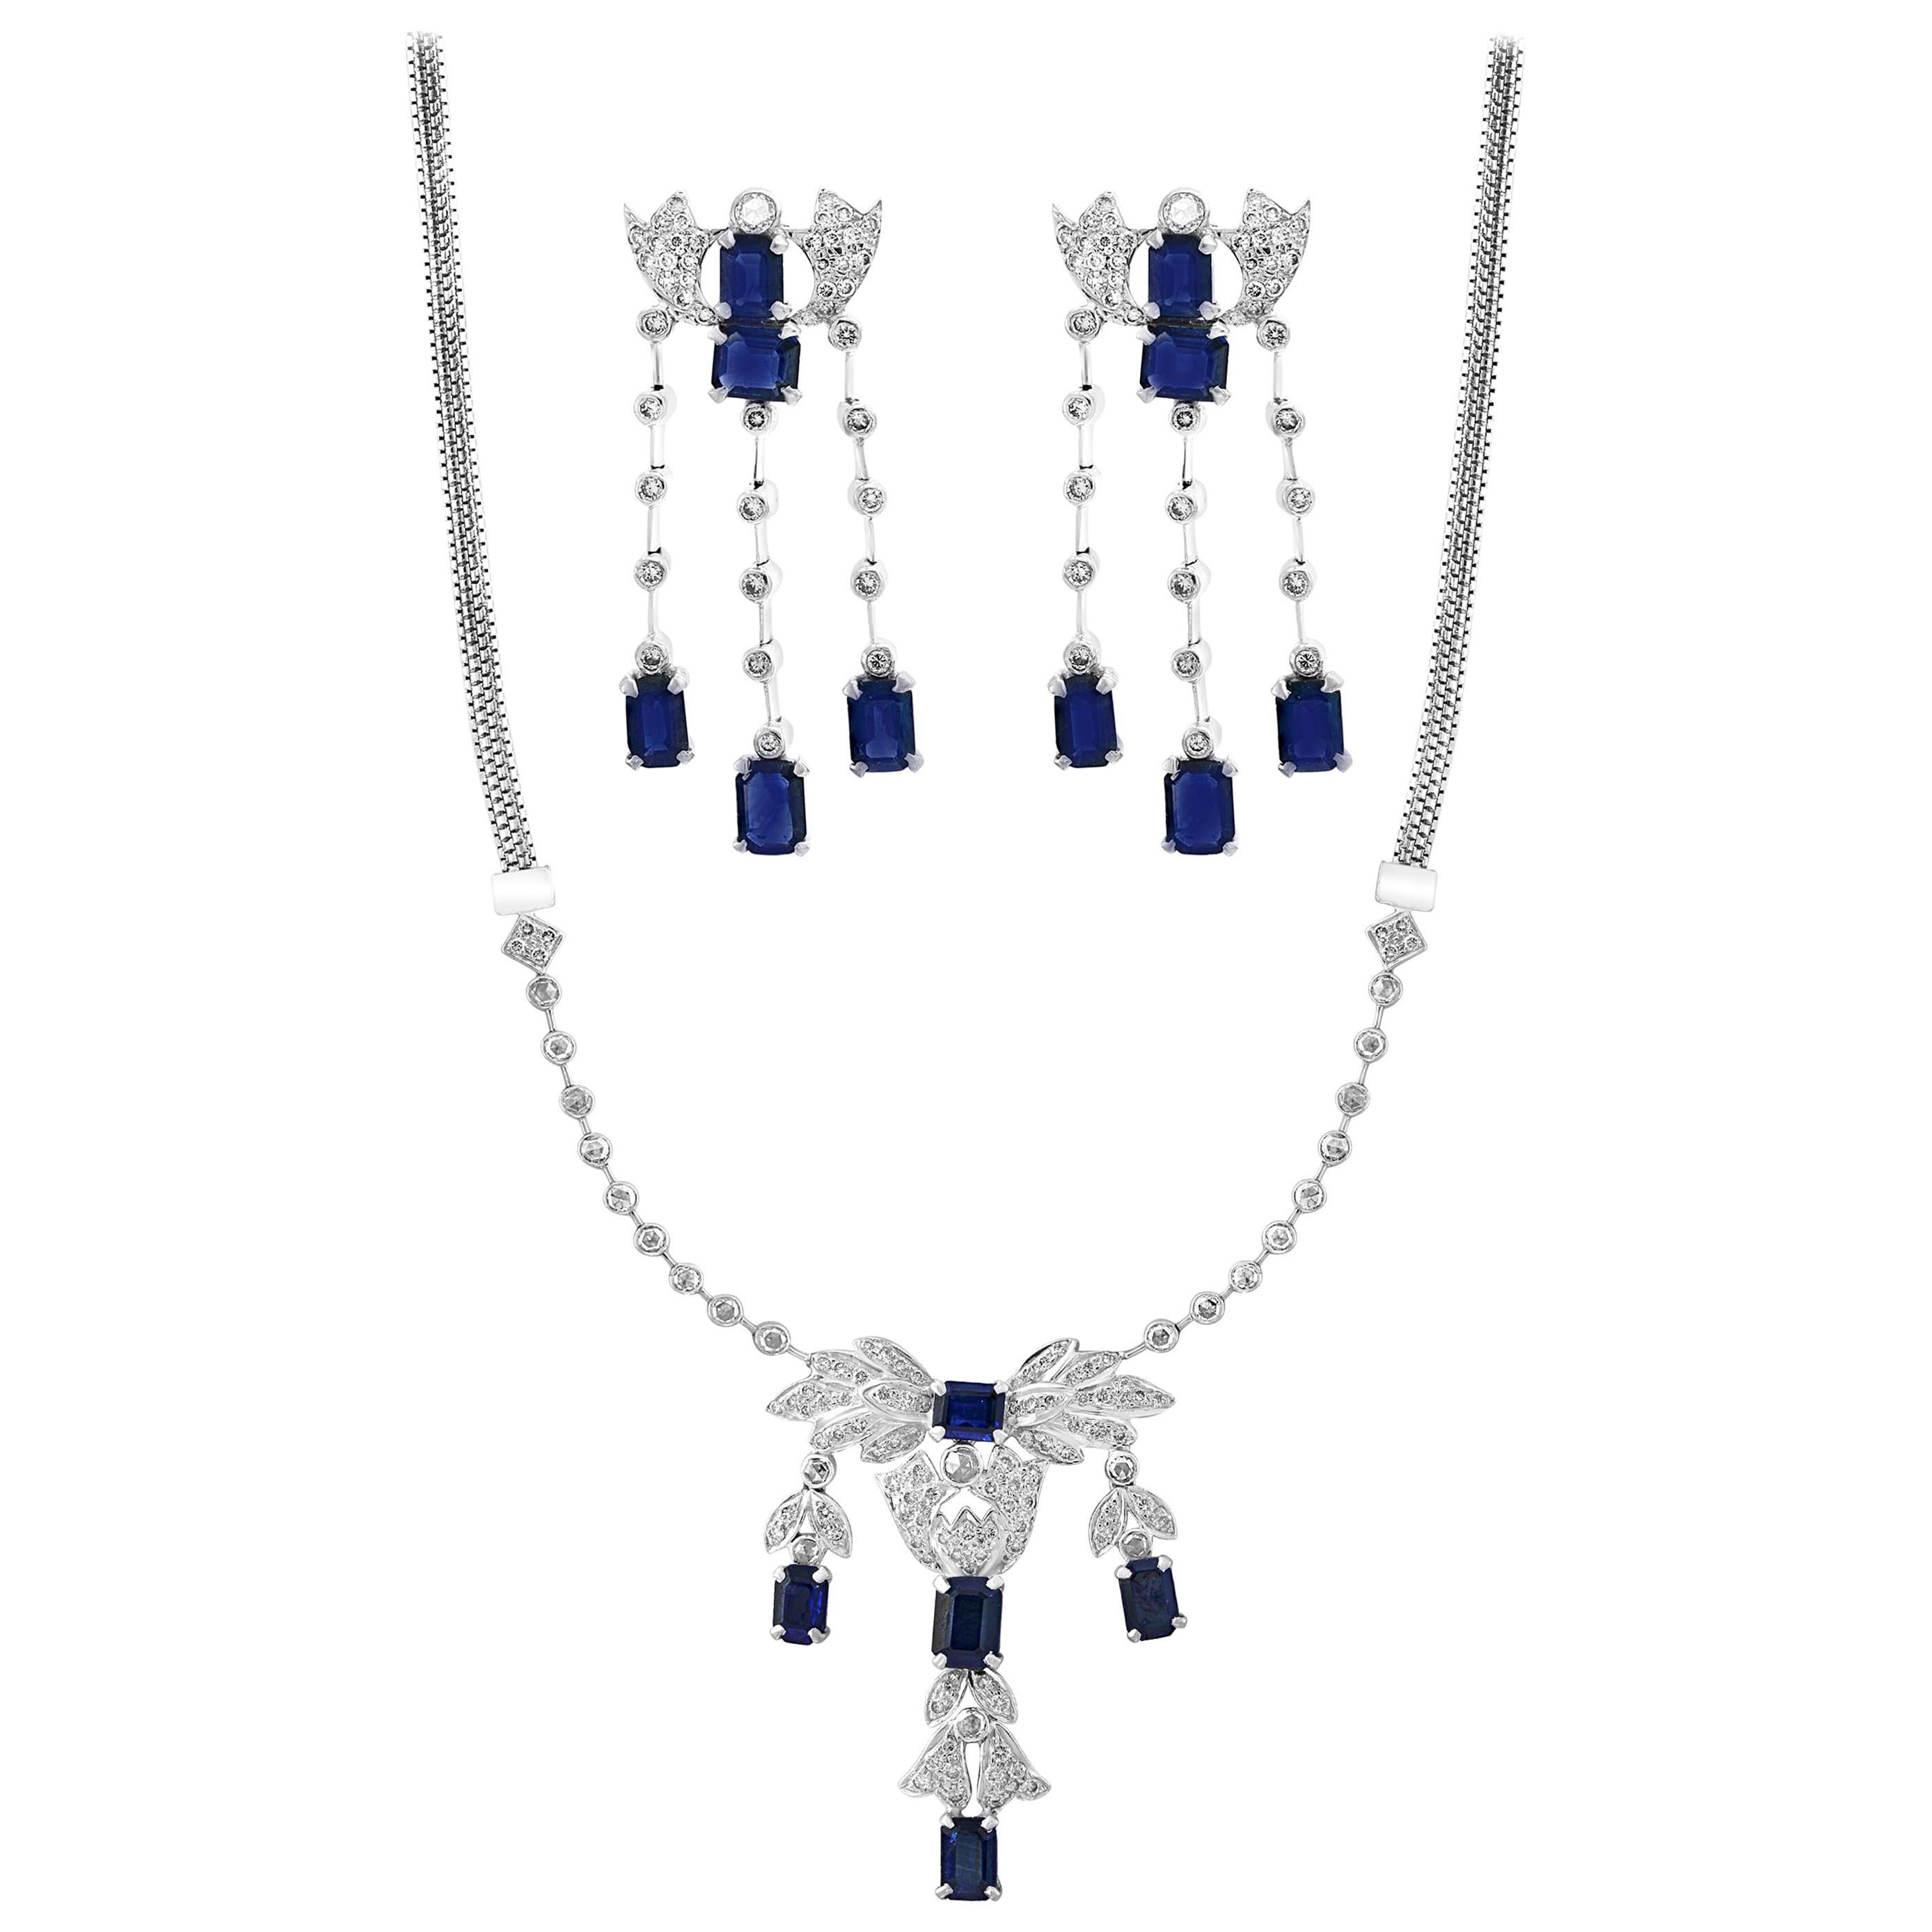 AGI Natural Blue Sapphire & Diamond Necklace 18 Karat White Gold, Suite, Estate For Sale